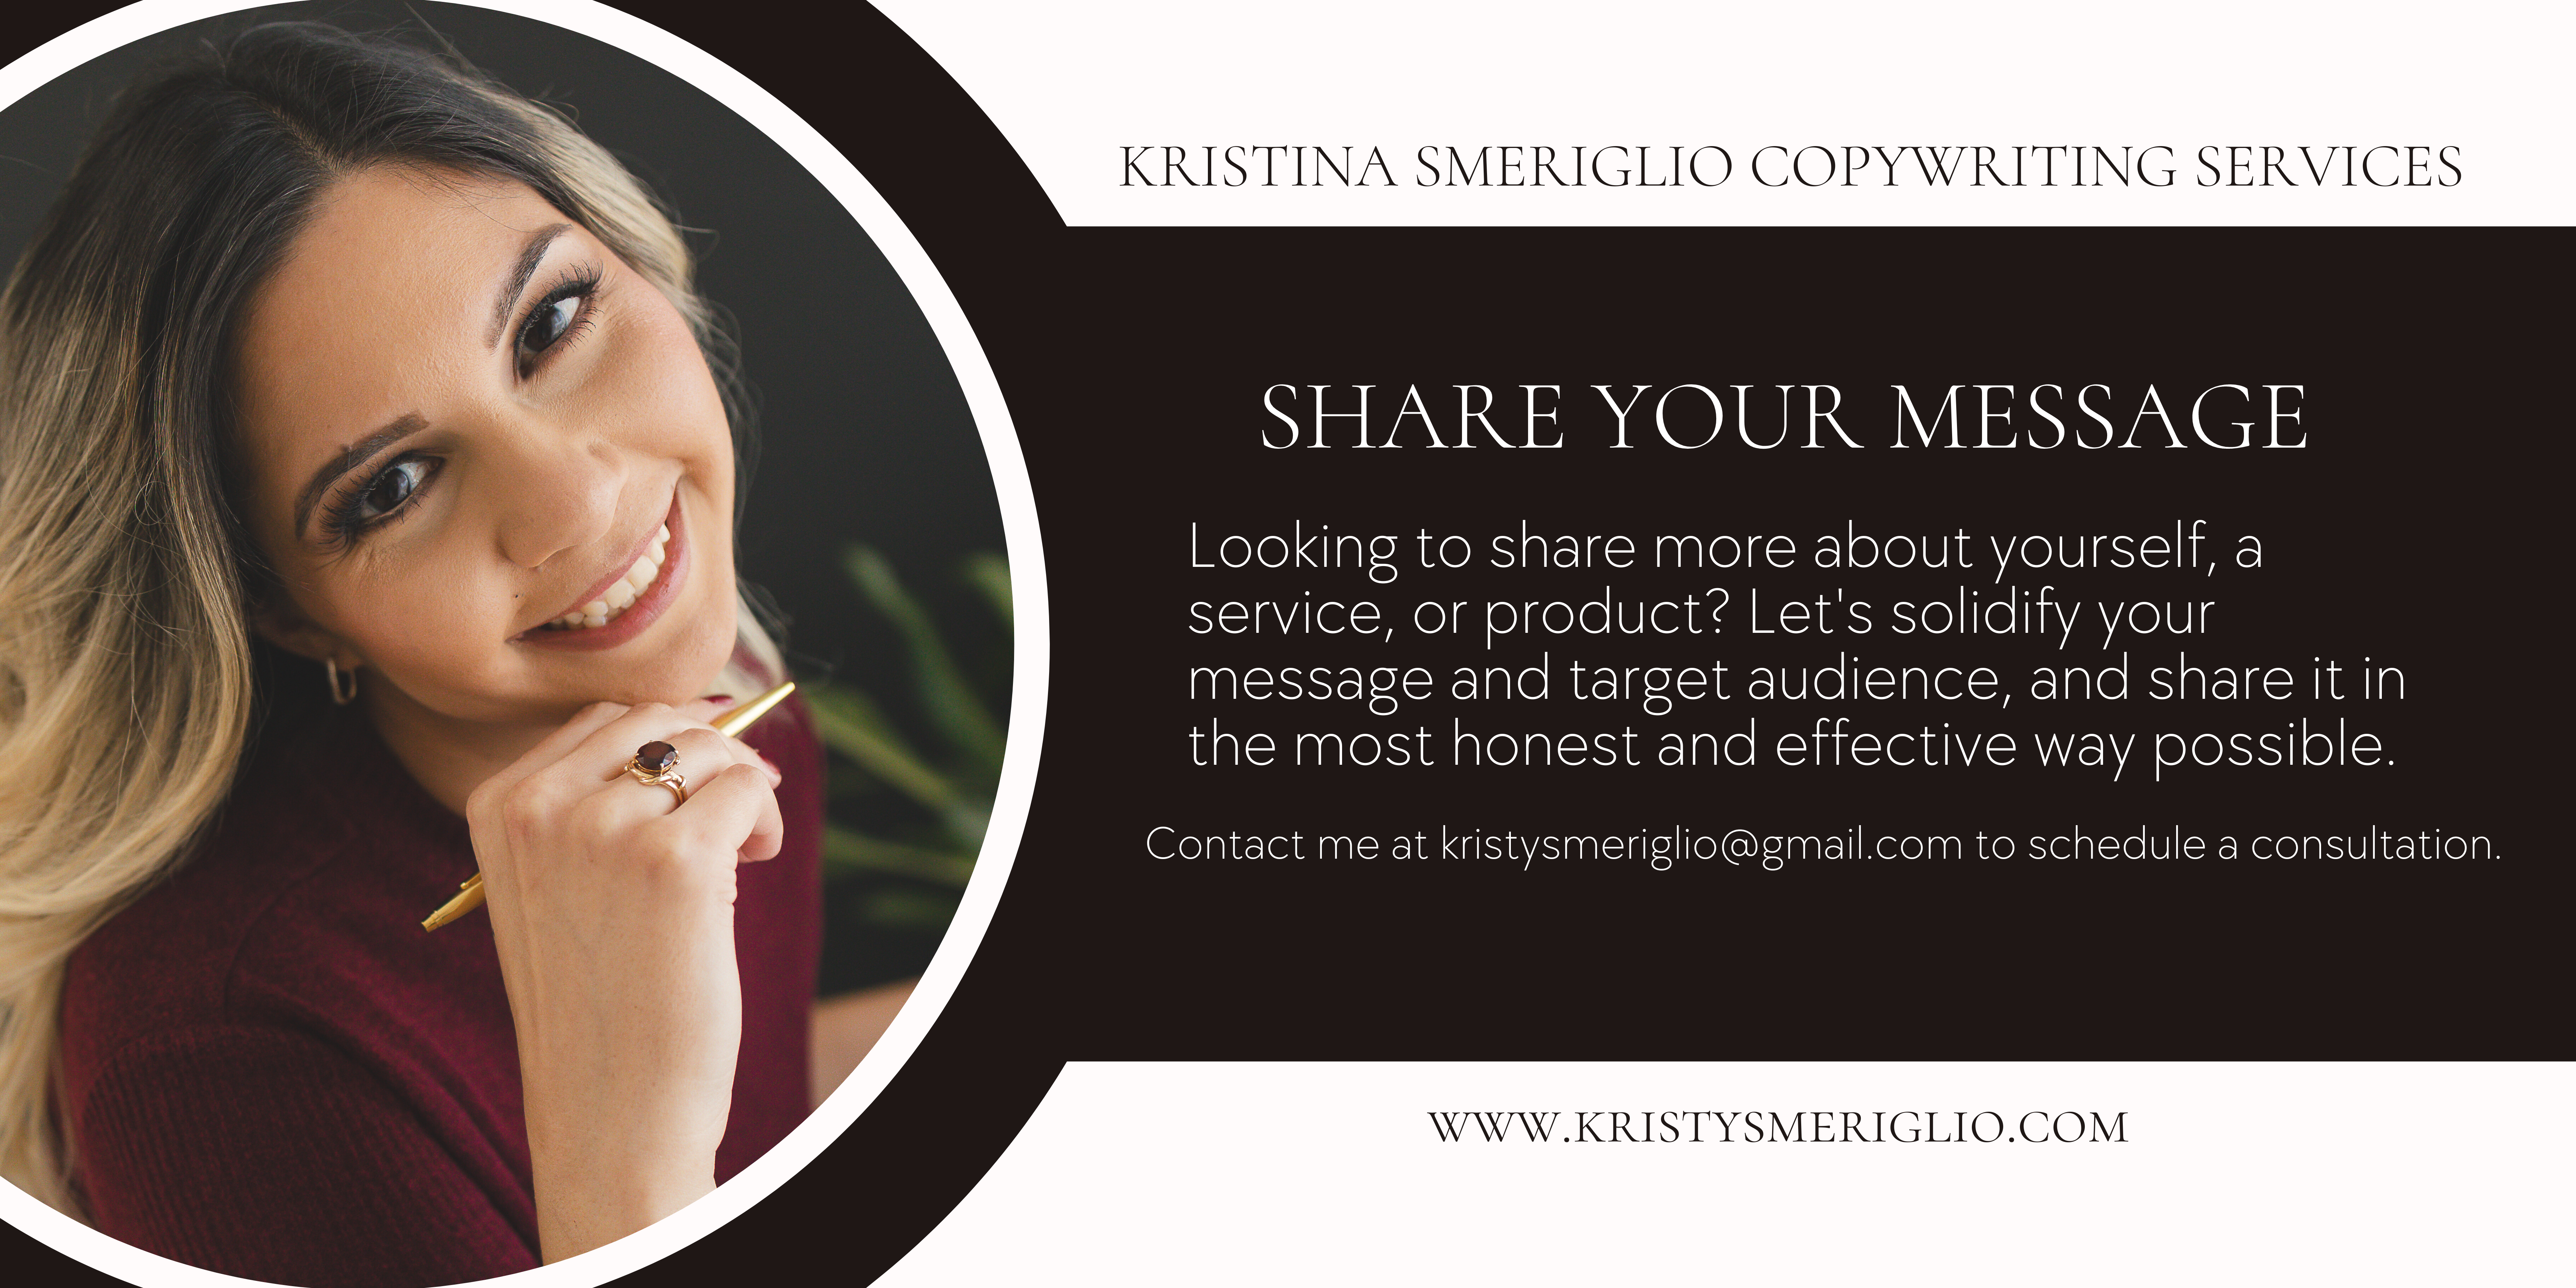 Kristina Smeriglio Copywriting Services